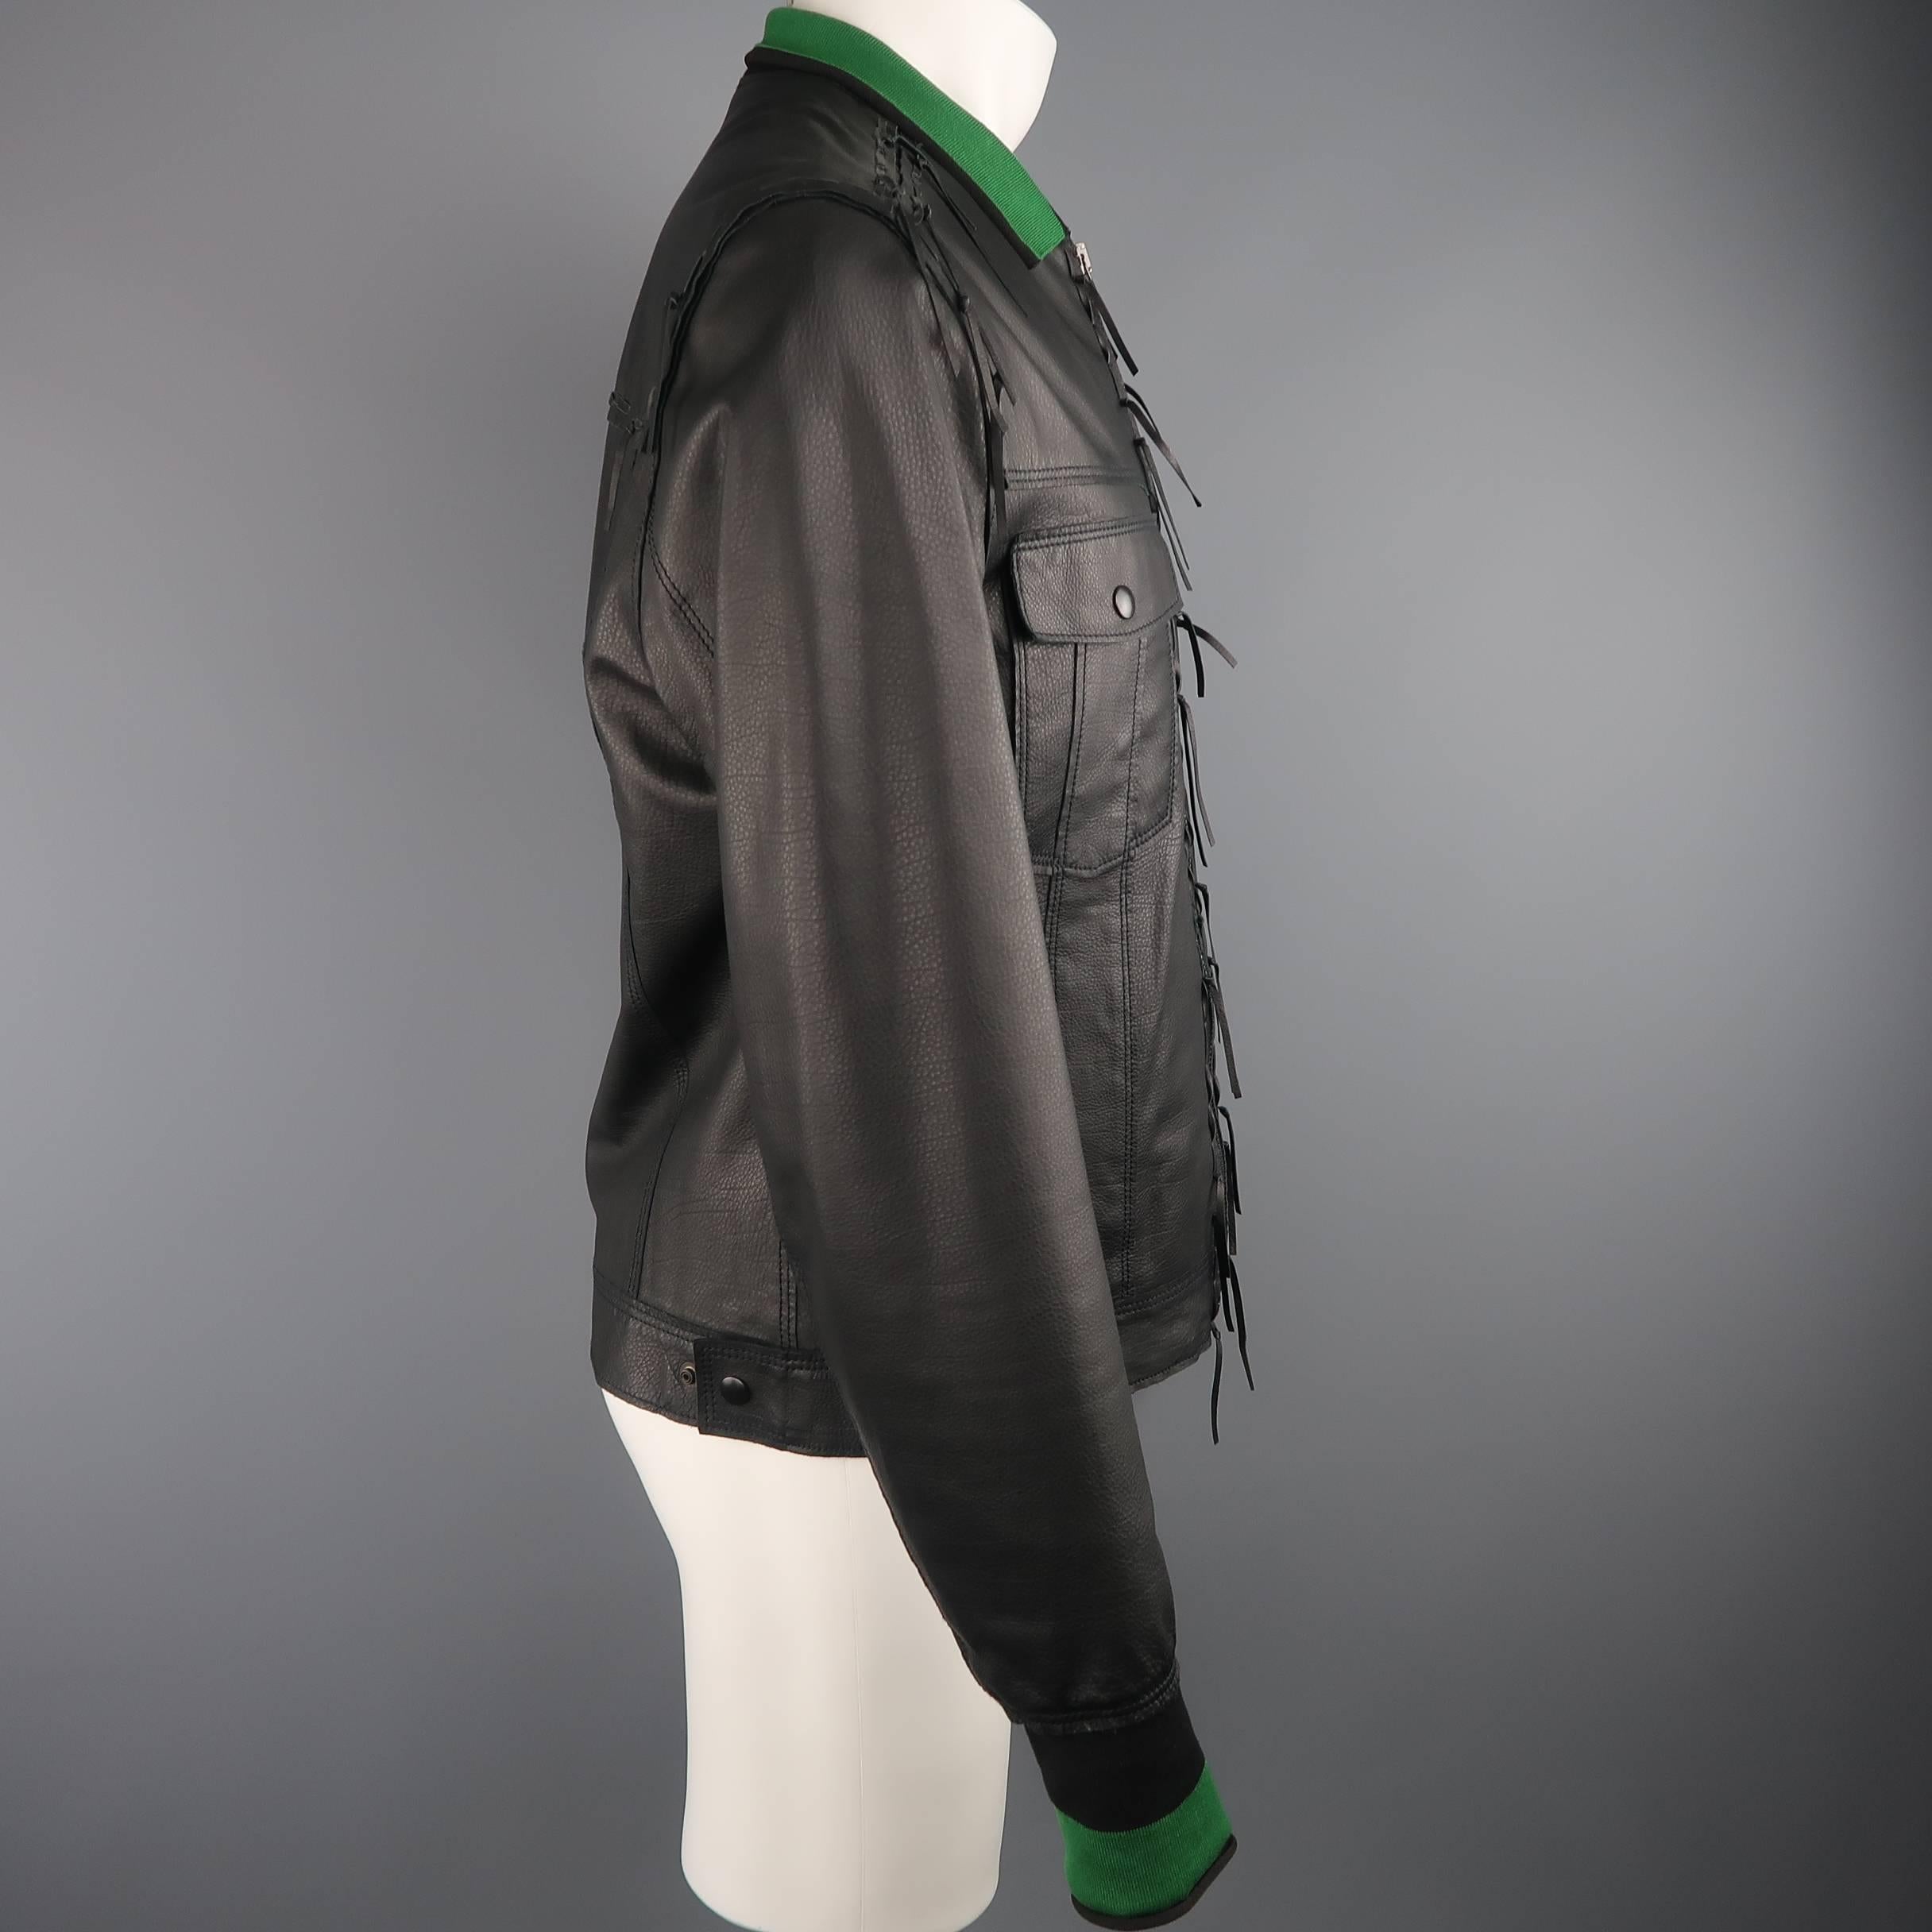 Lanvin Leather Jacket - Black Leather Fringe Trim Green Collar Bomber Coat 2